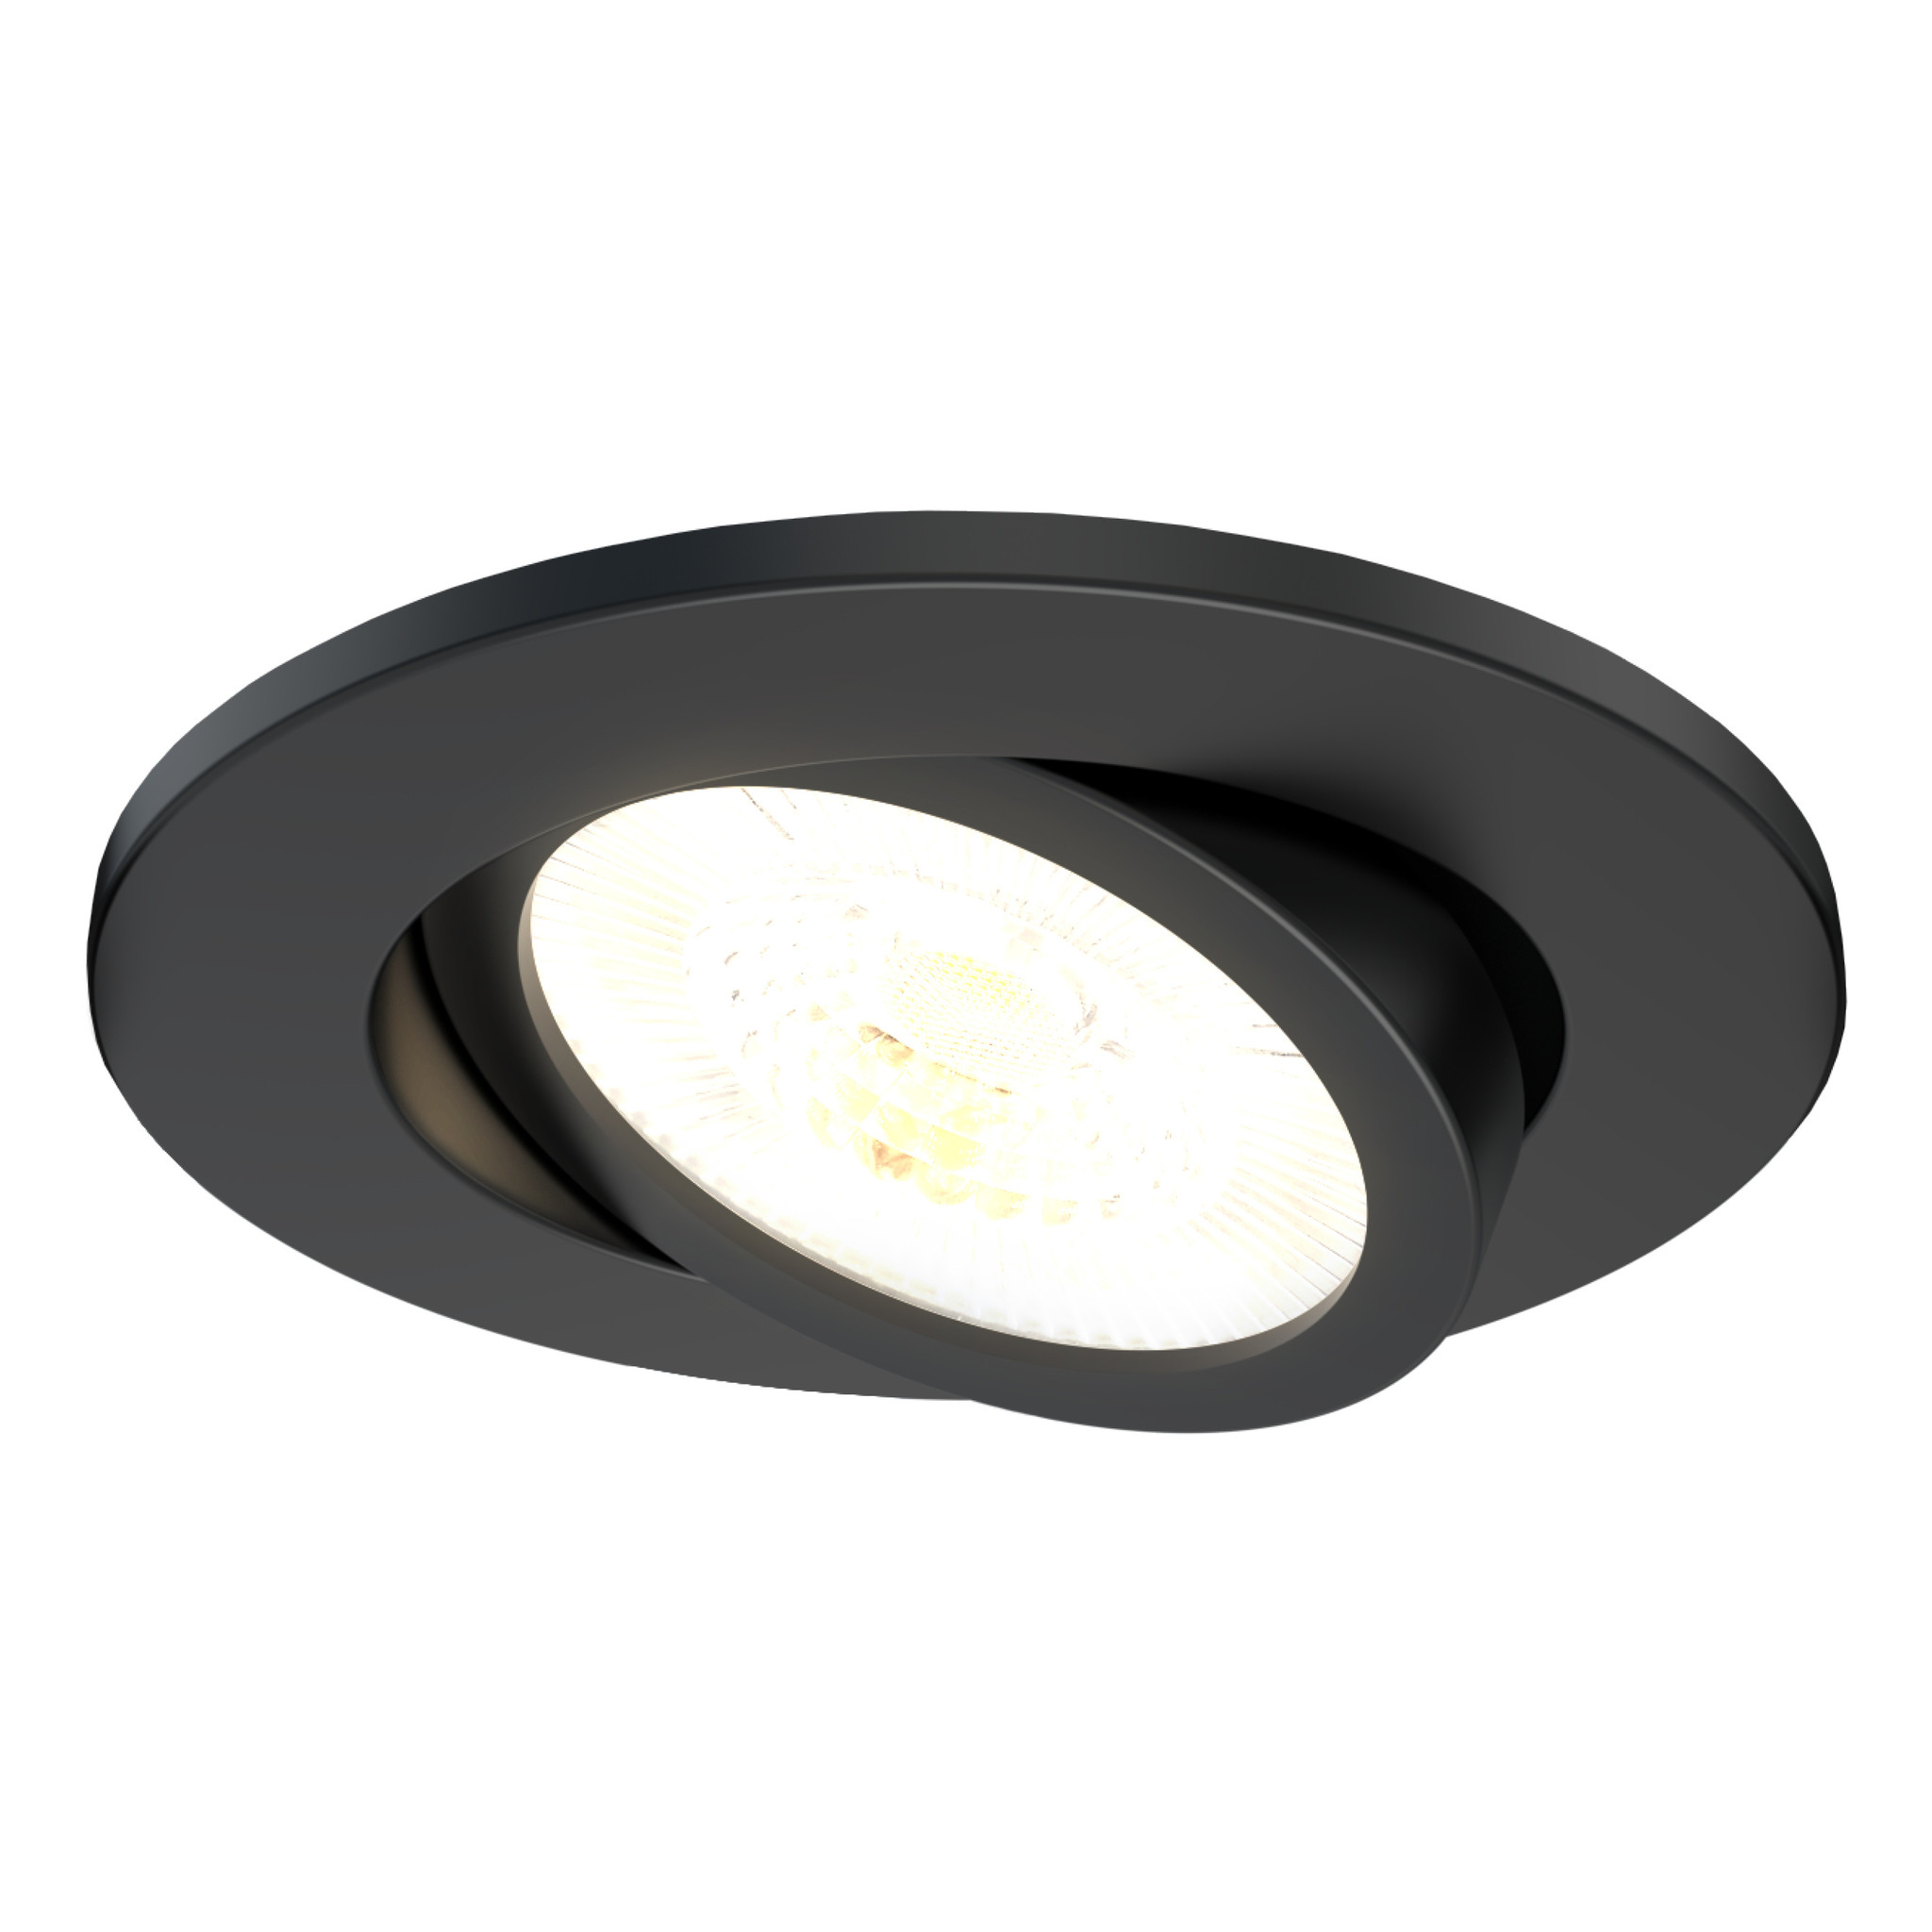 Spot LED encastré rond noir 7W, couleurs au choix - Miror 